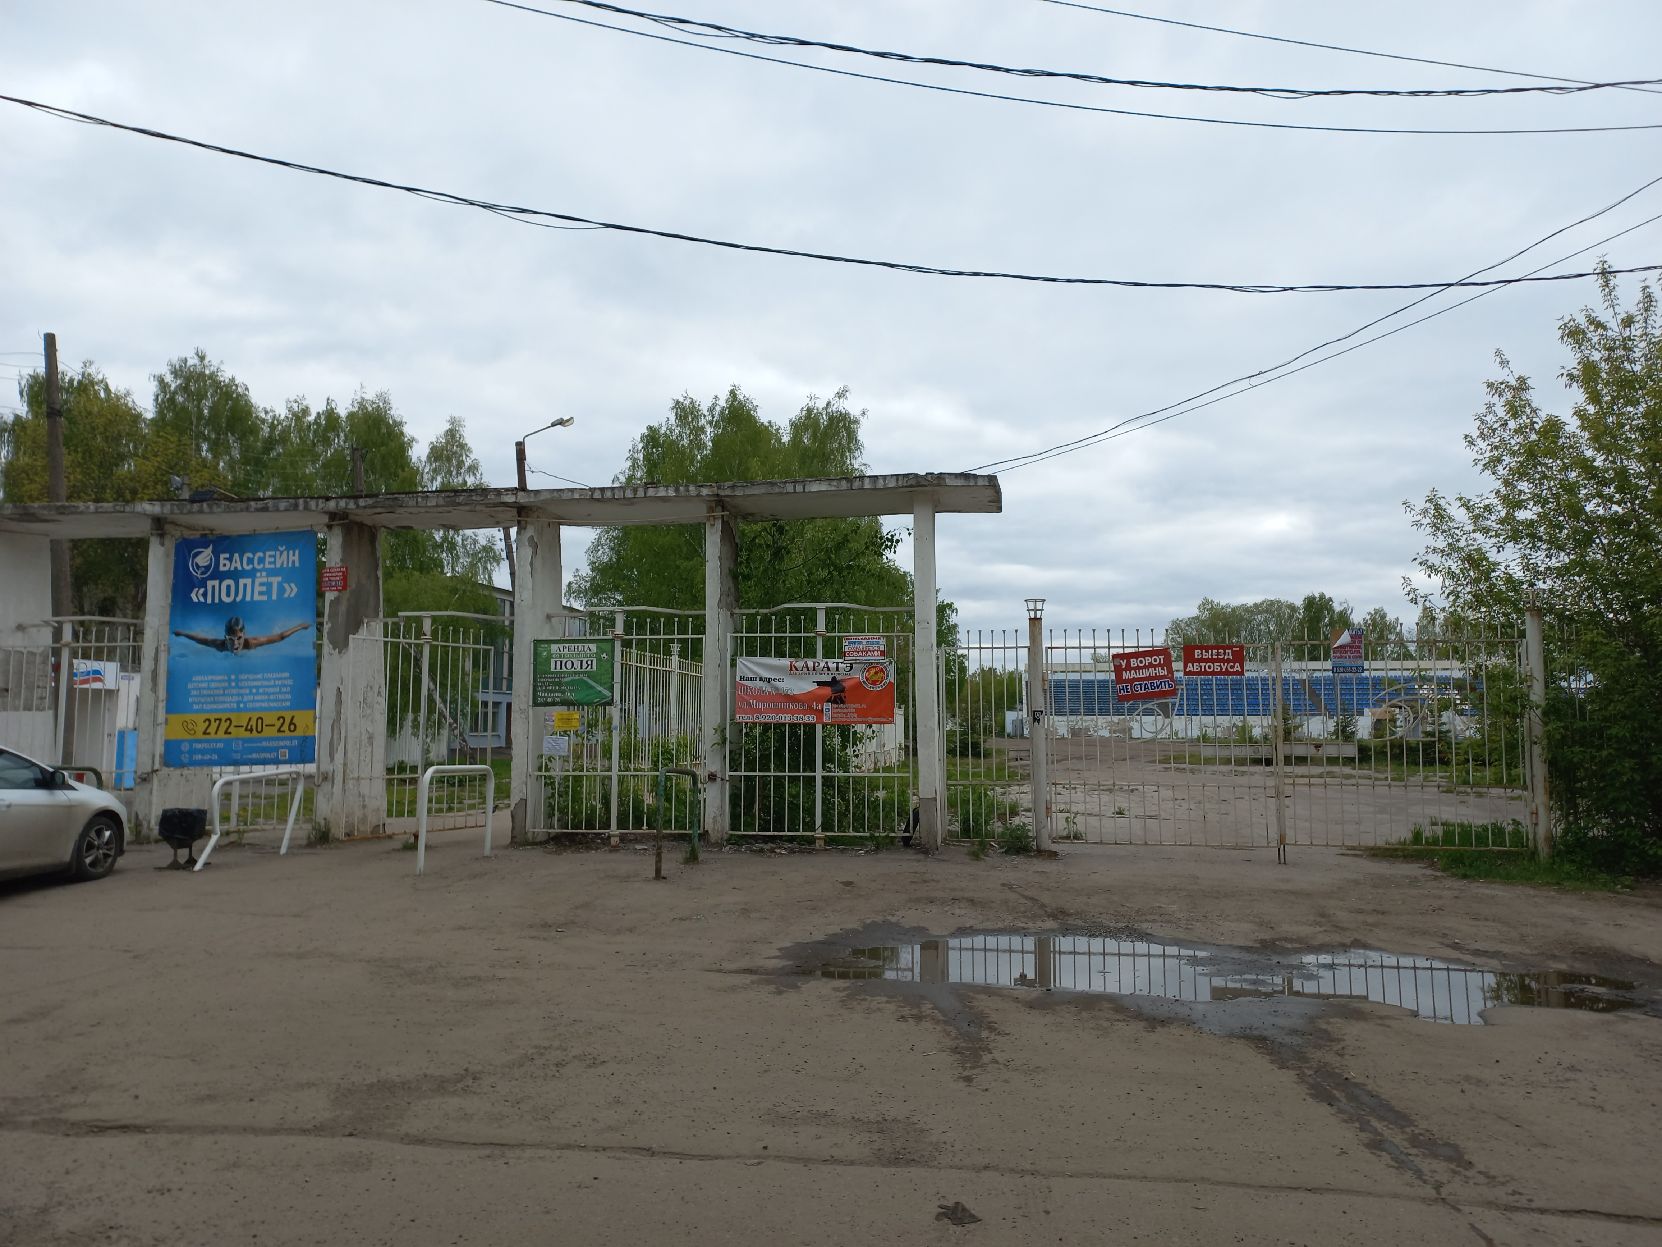 Времена былой славы: что ждет заброшенные стадионы Нижнего Новгорода?   - фото 4